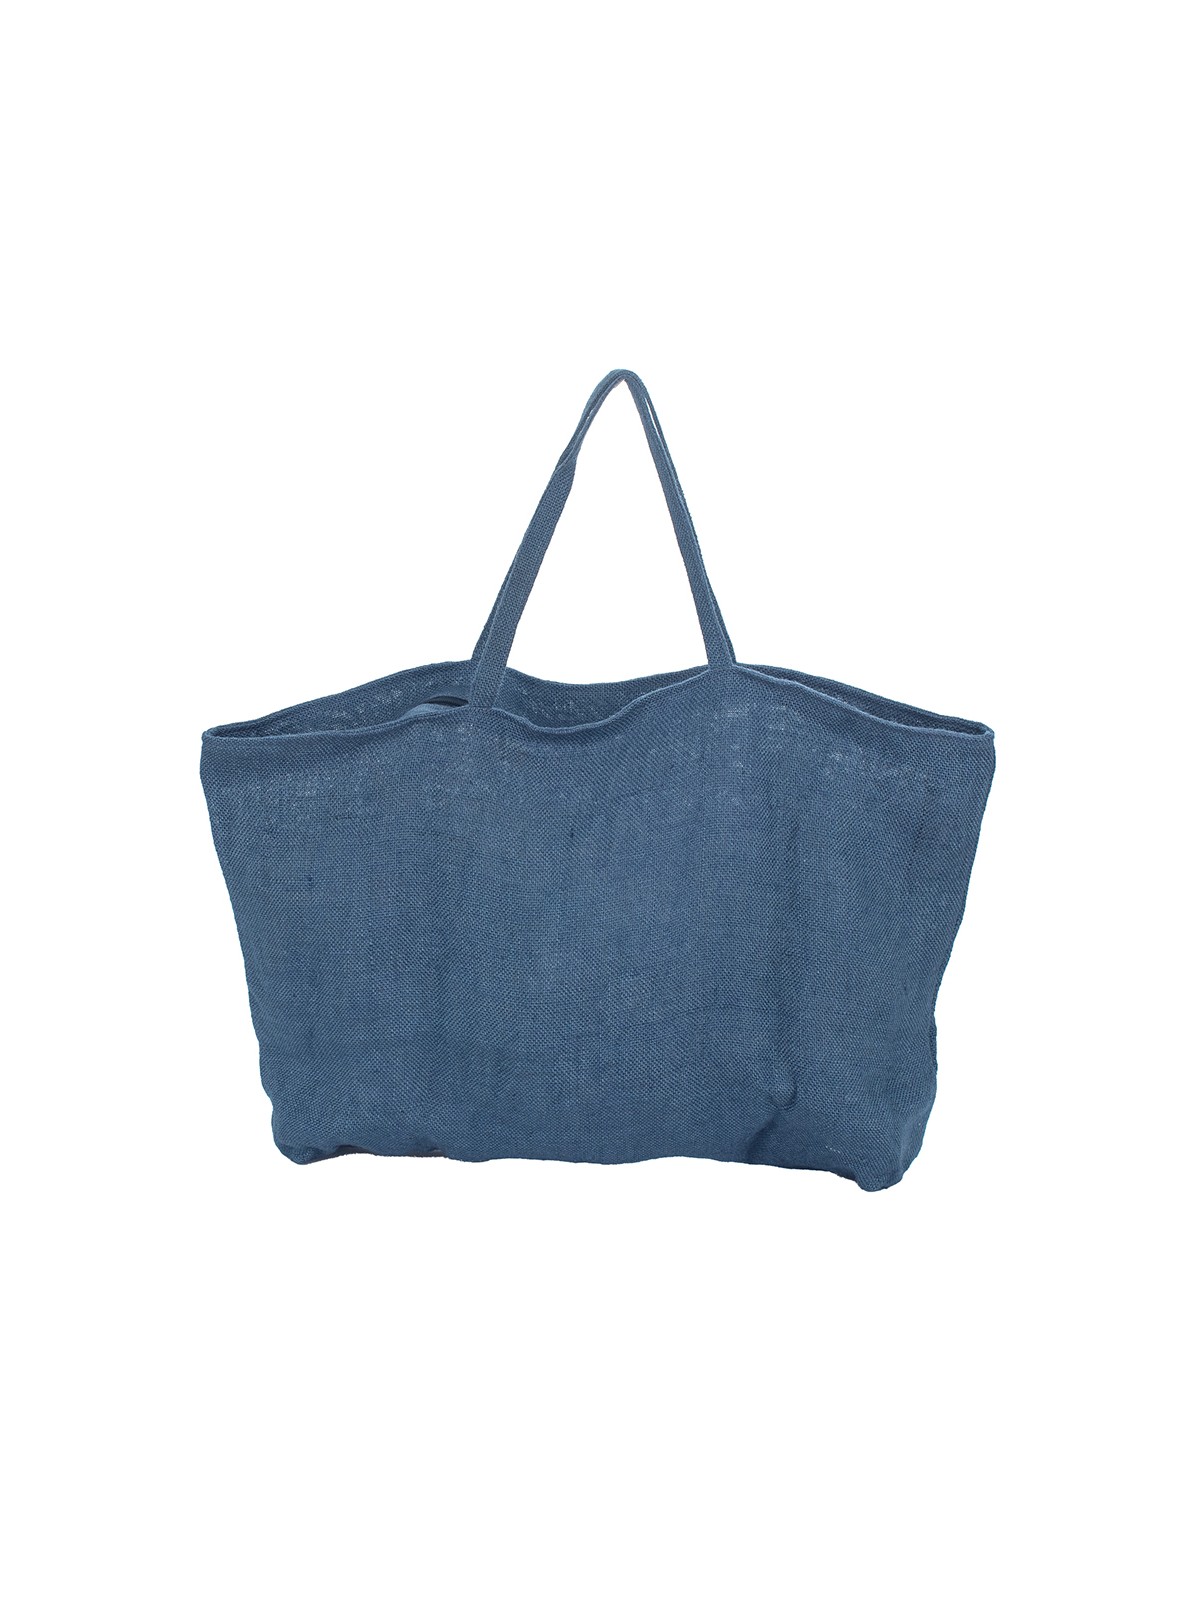 Sac couleur bleu jean l 3 vue de dos l Tilleulmenthe mode boutique de vêtements femme en ligne